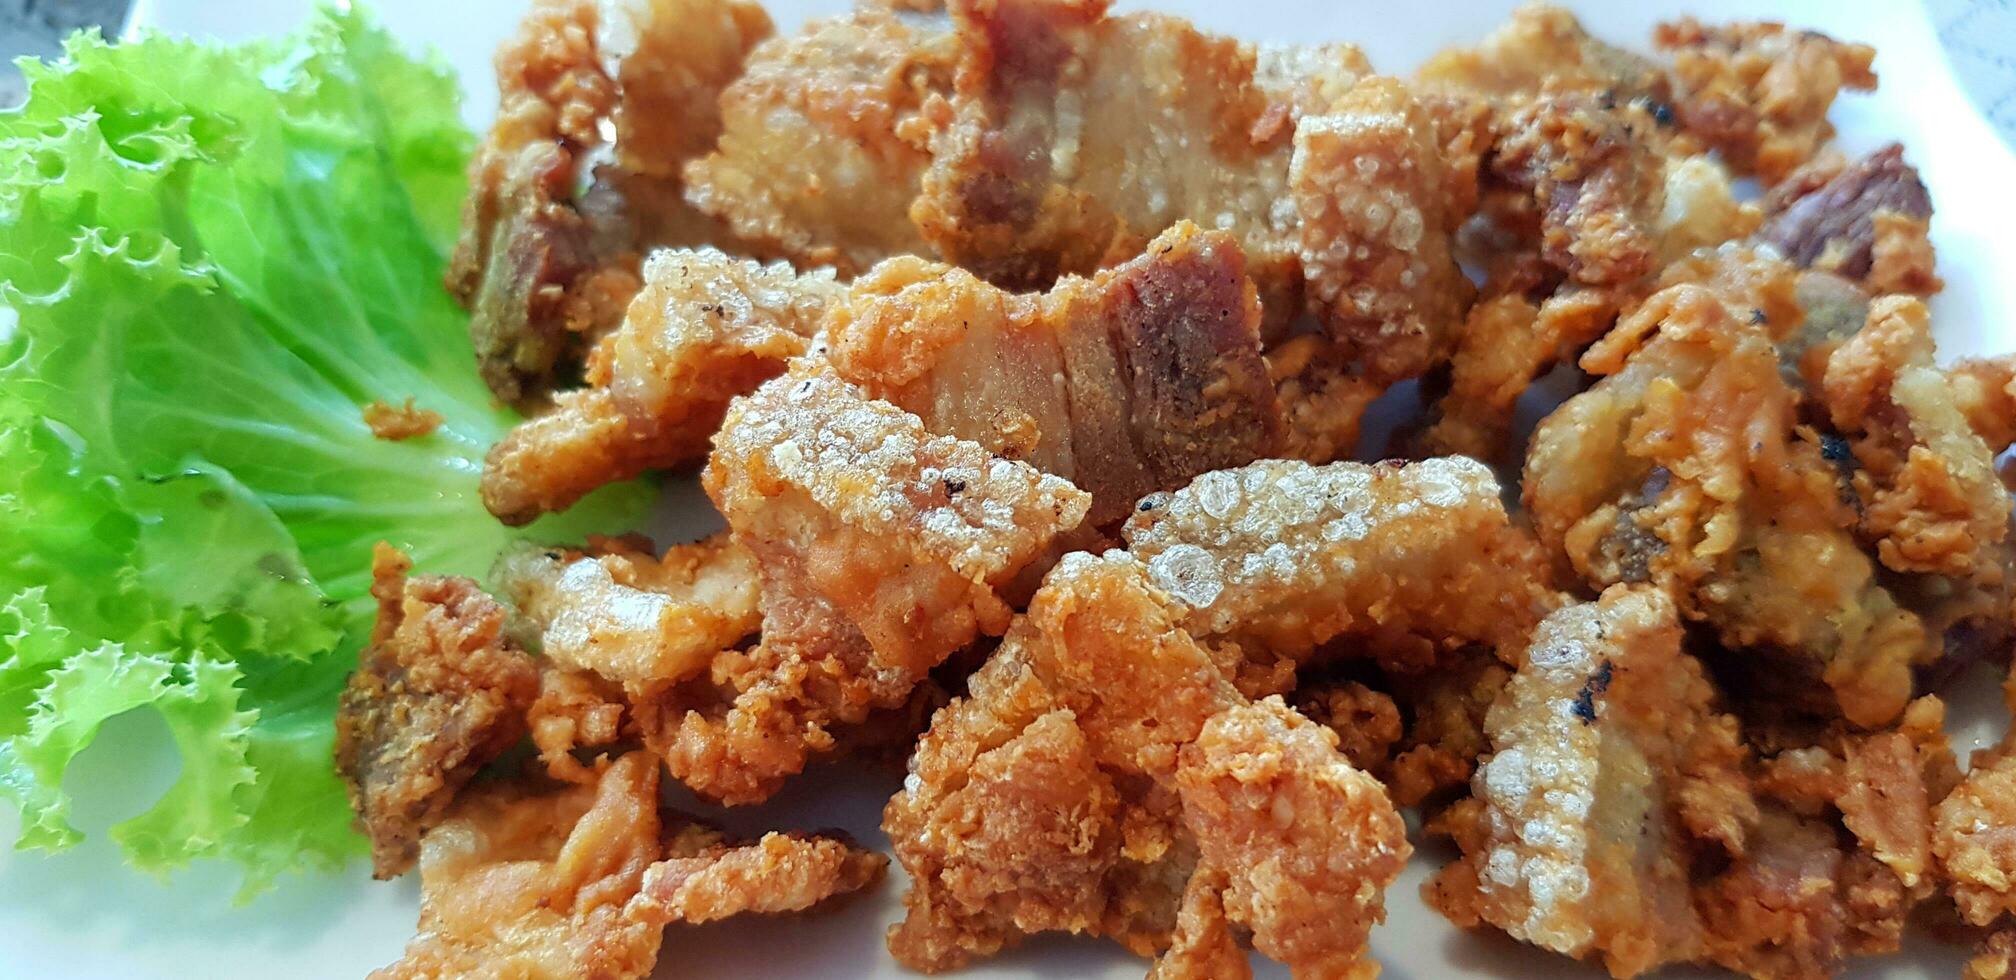 profundo frito crujiente Cerdo con verde repollo hoja en blanco plato a tailandés restaurante. asiático y grasa comida concepto foto